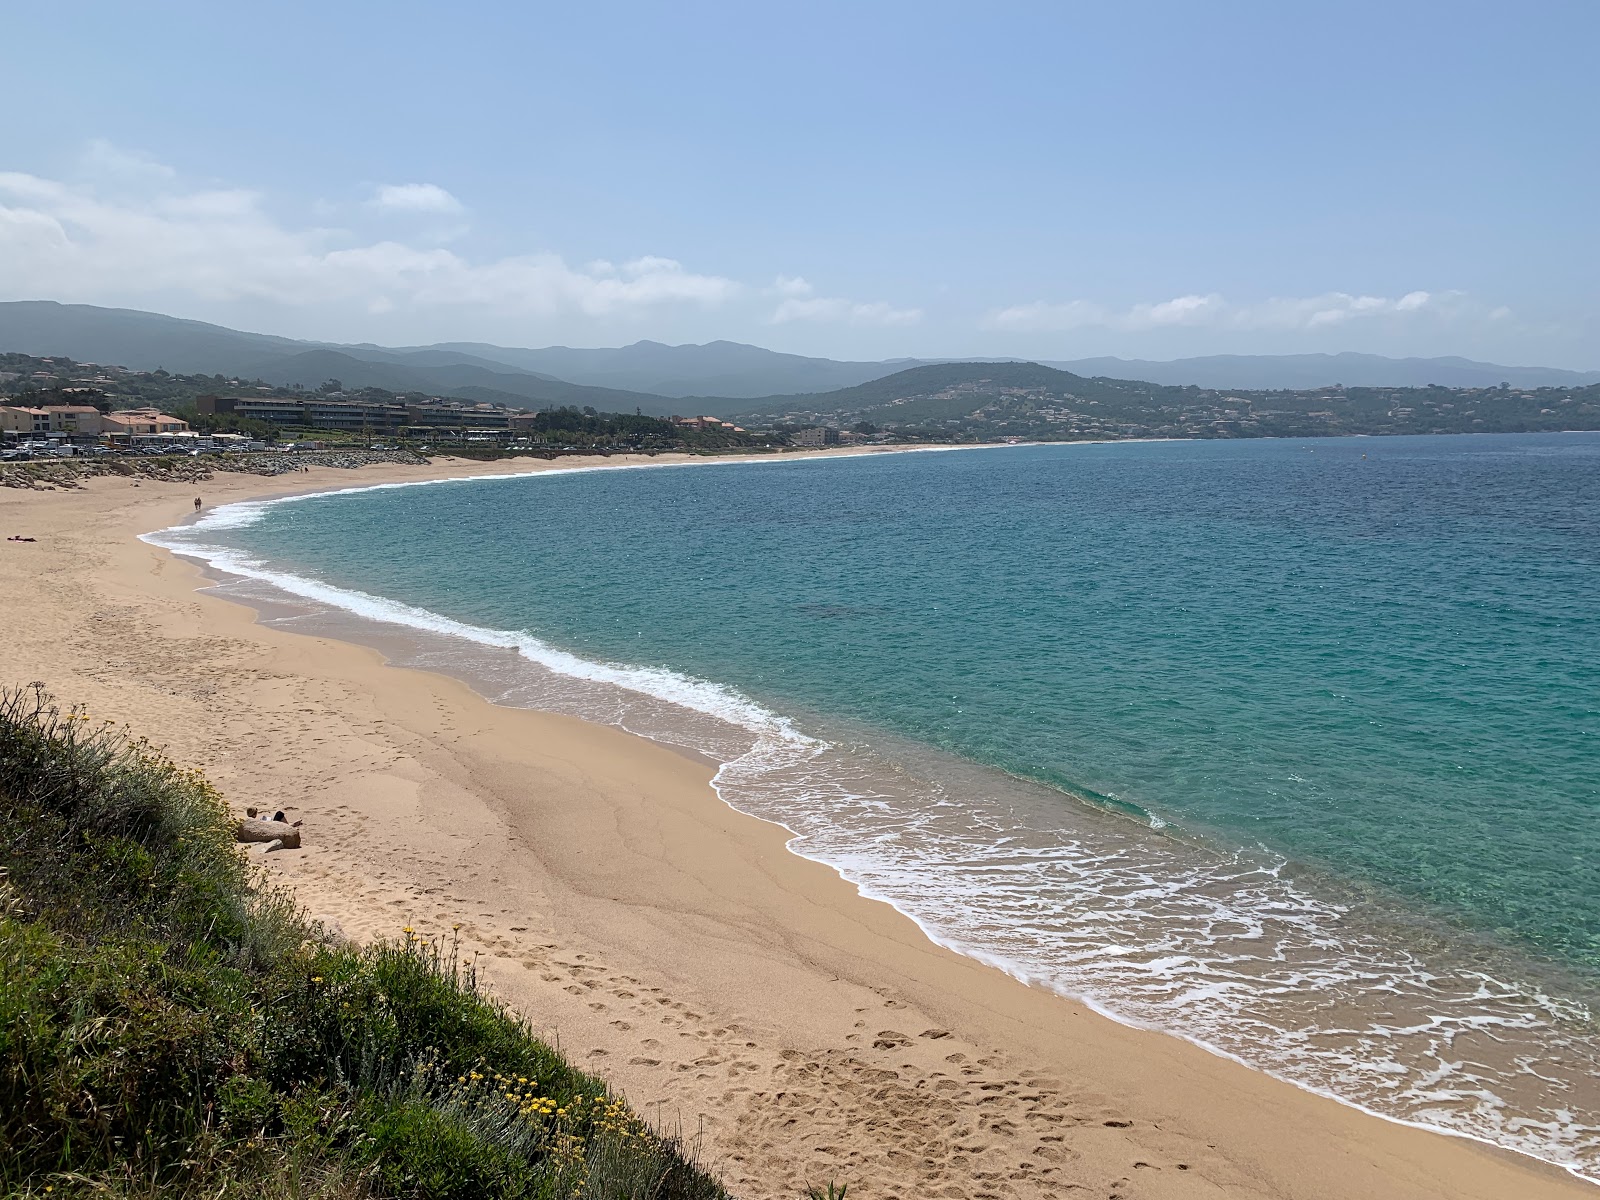 Zdjęcie Agosta beach III z powierzchnią jasny, drobny piasek